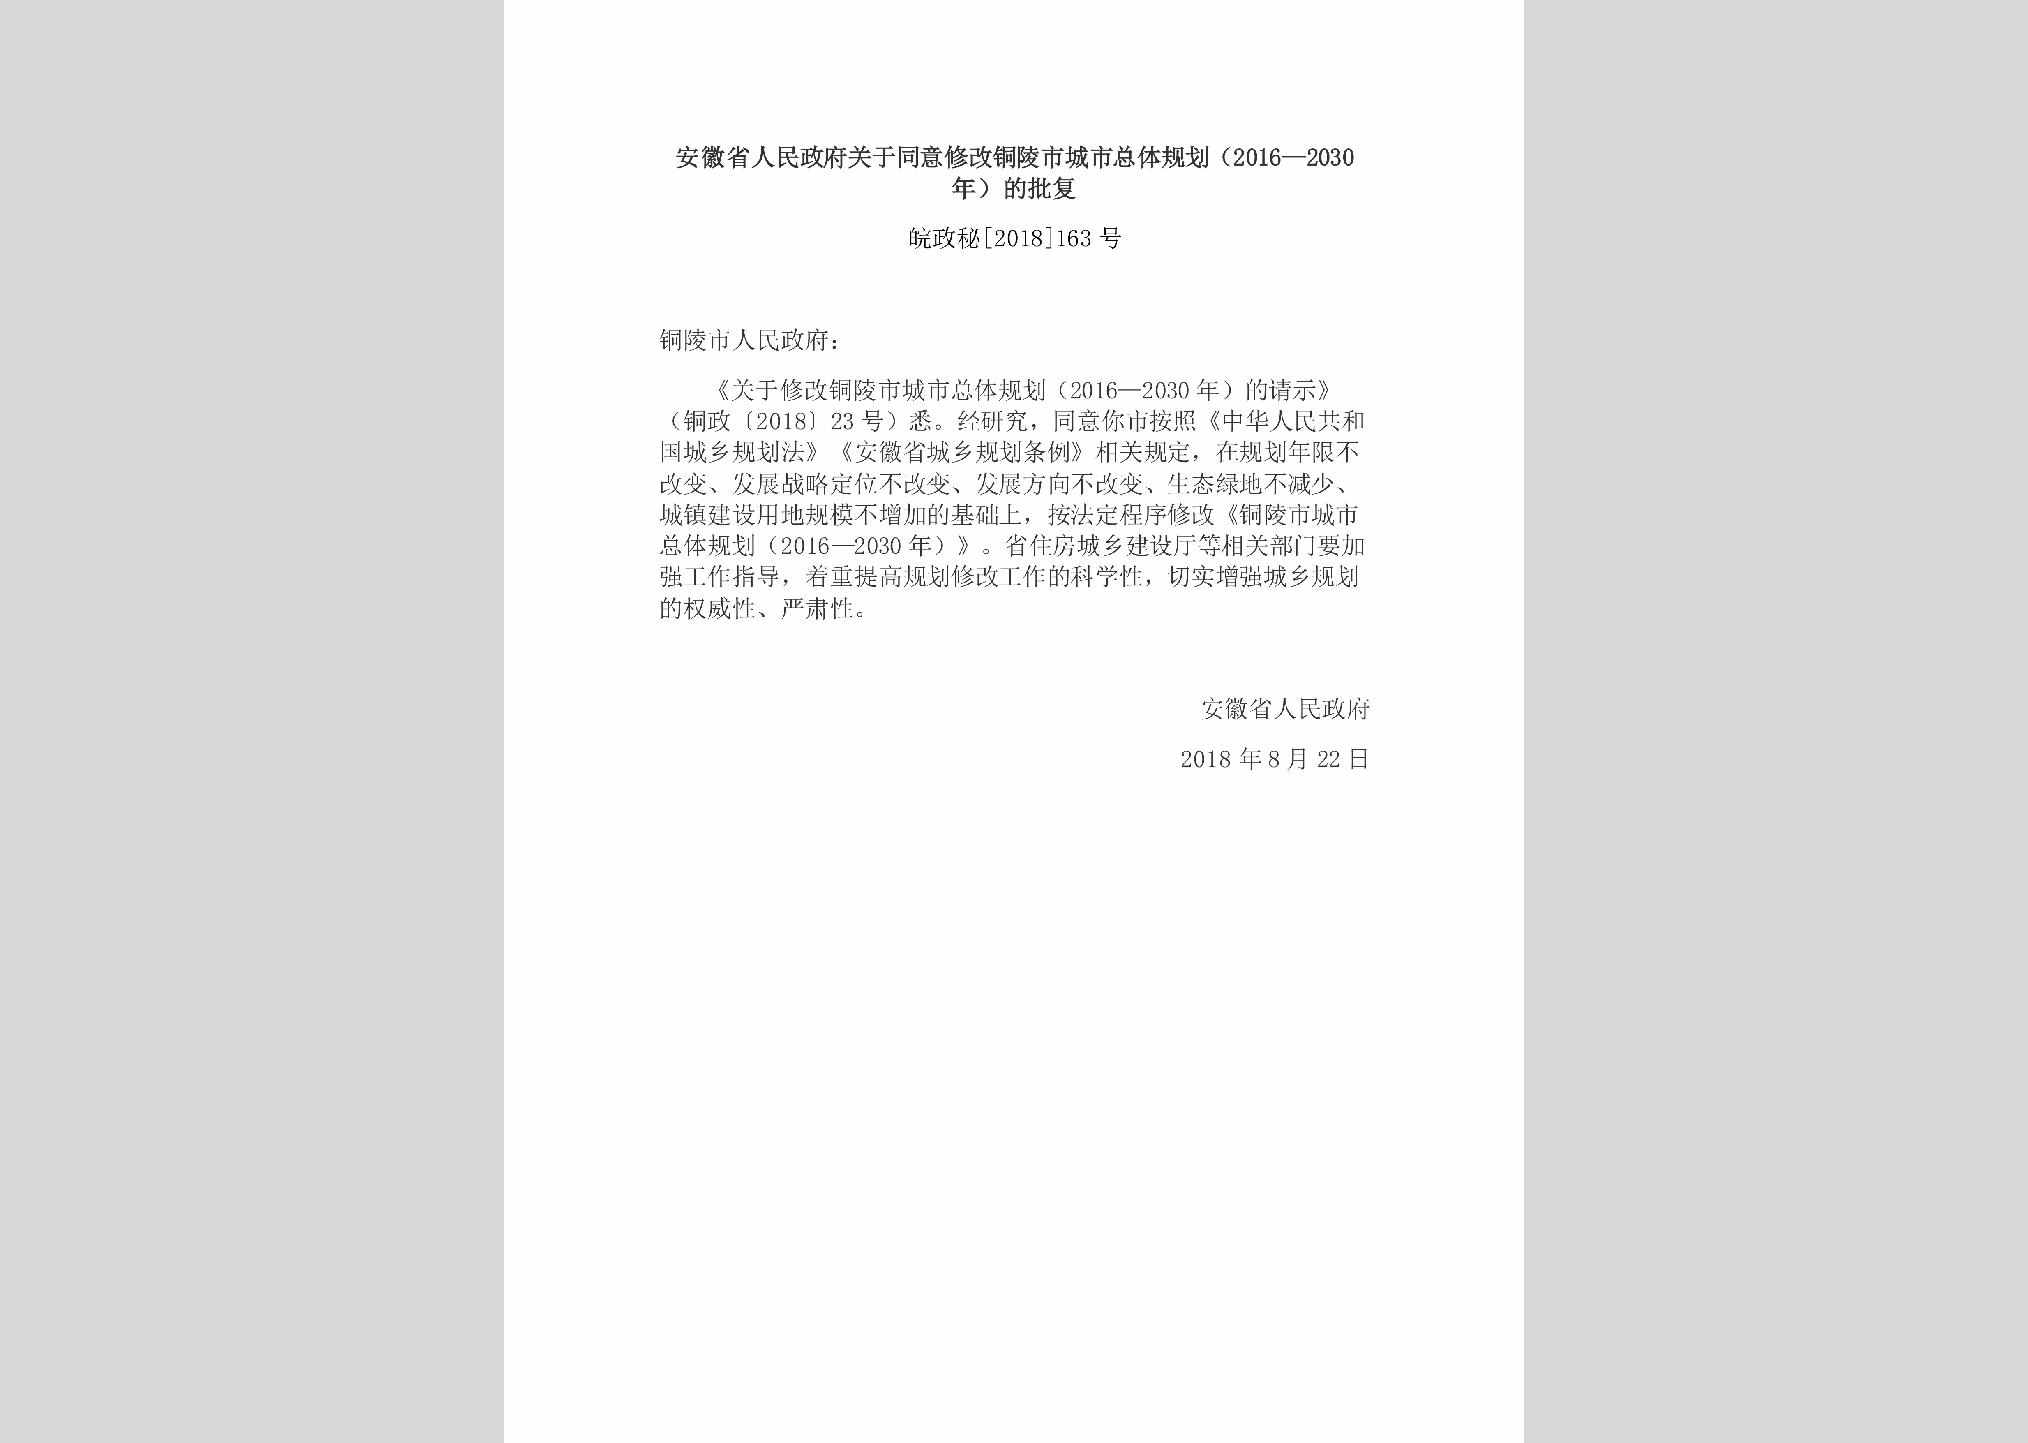 皖政秘[2018]163号：安徽省人民政府关于同意修改铜陵市城市总体规划（2016—2030年）的批复